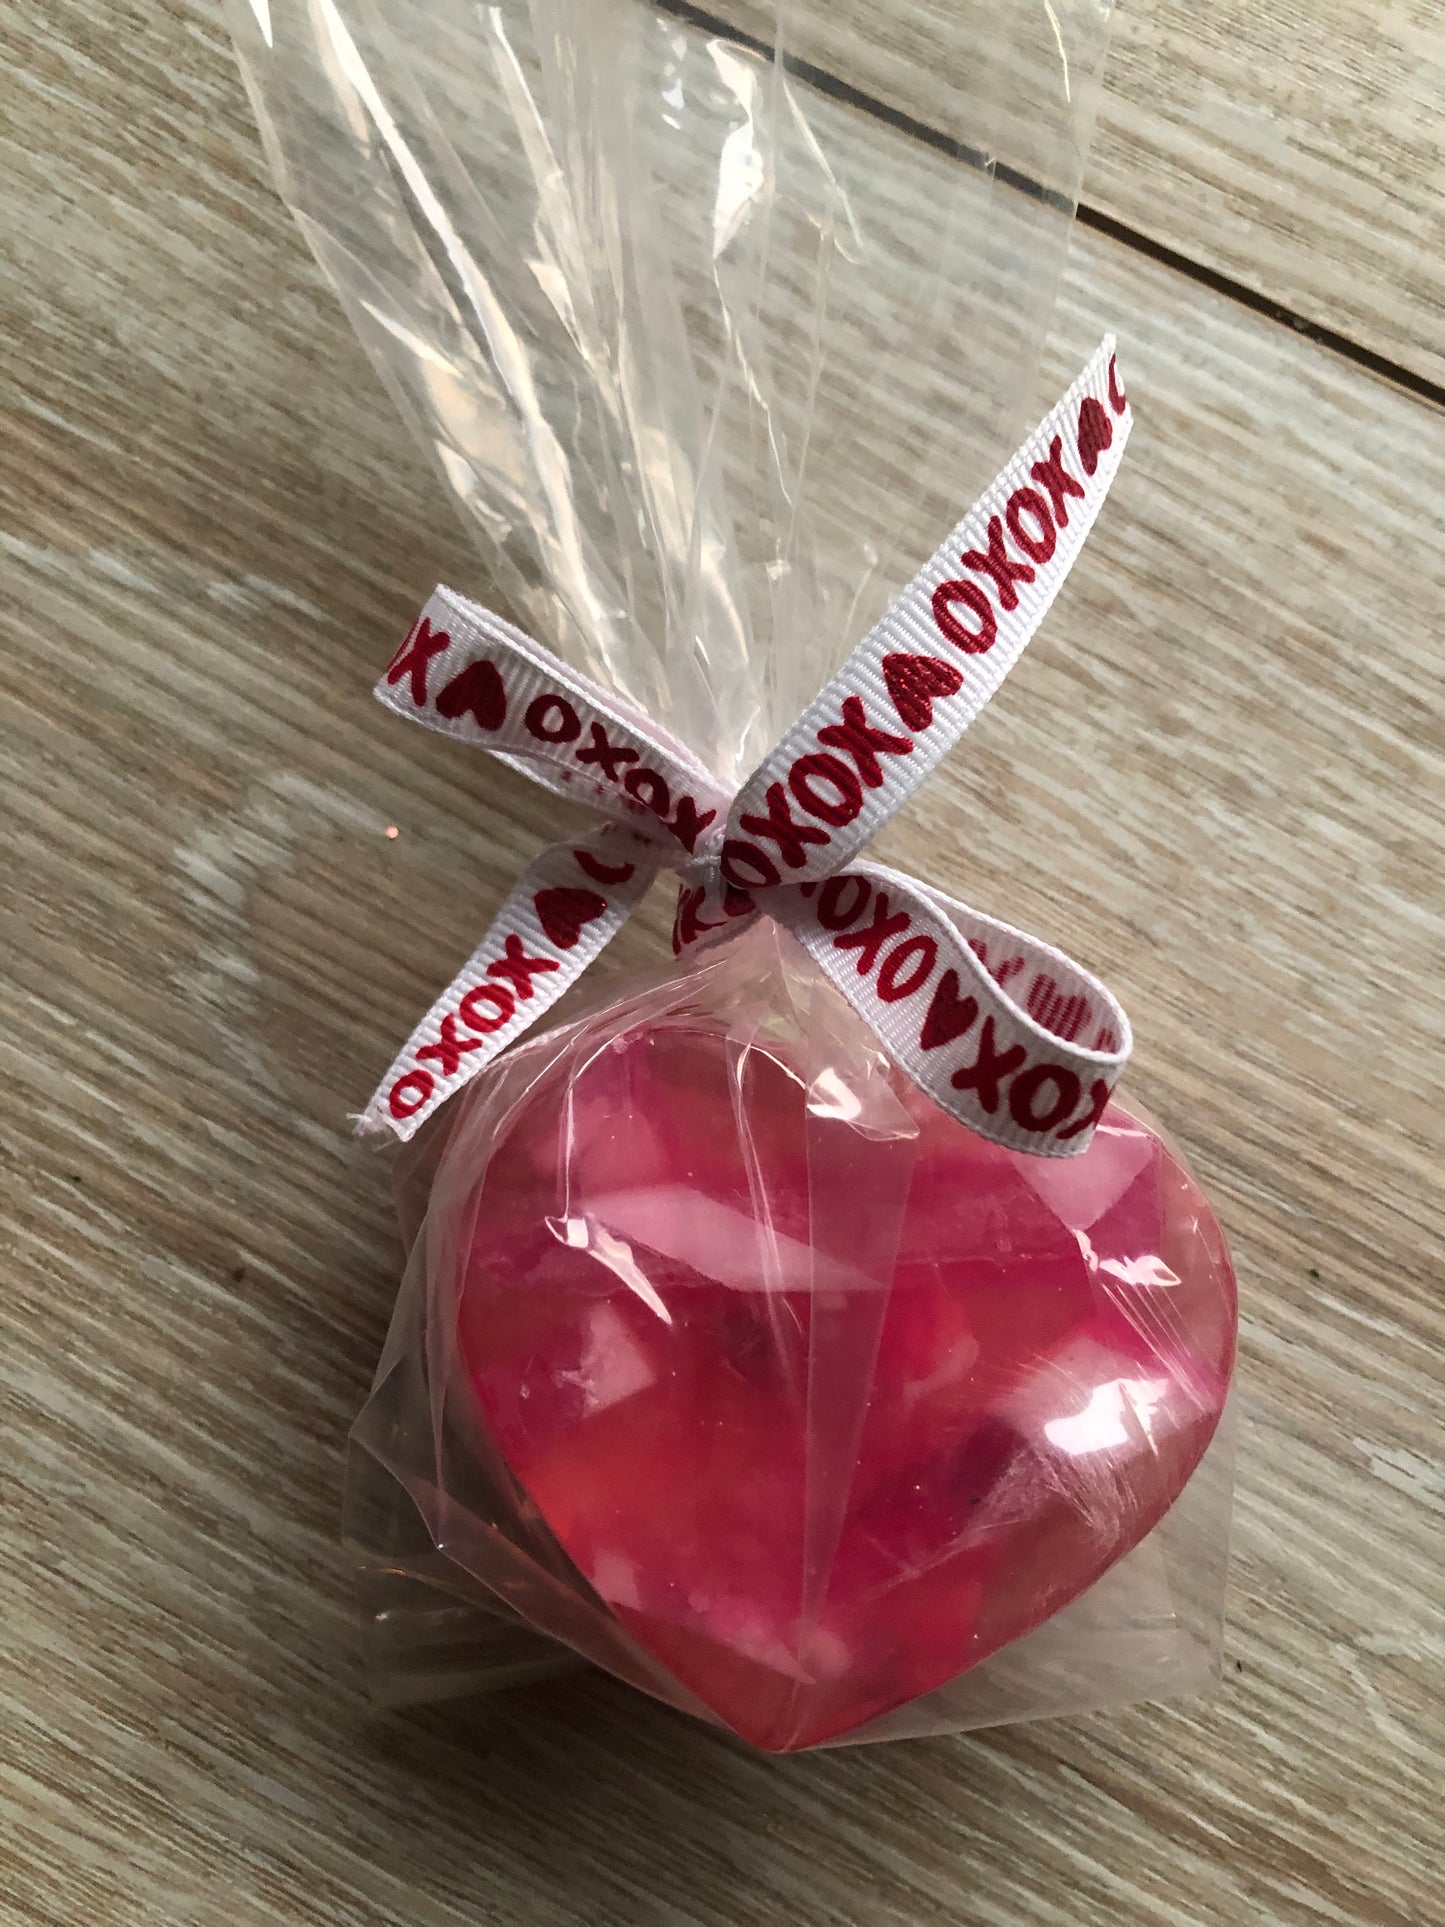 Fun and festive Valentine heart soap in cello bag with xoxo tie.